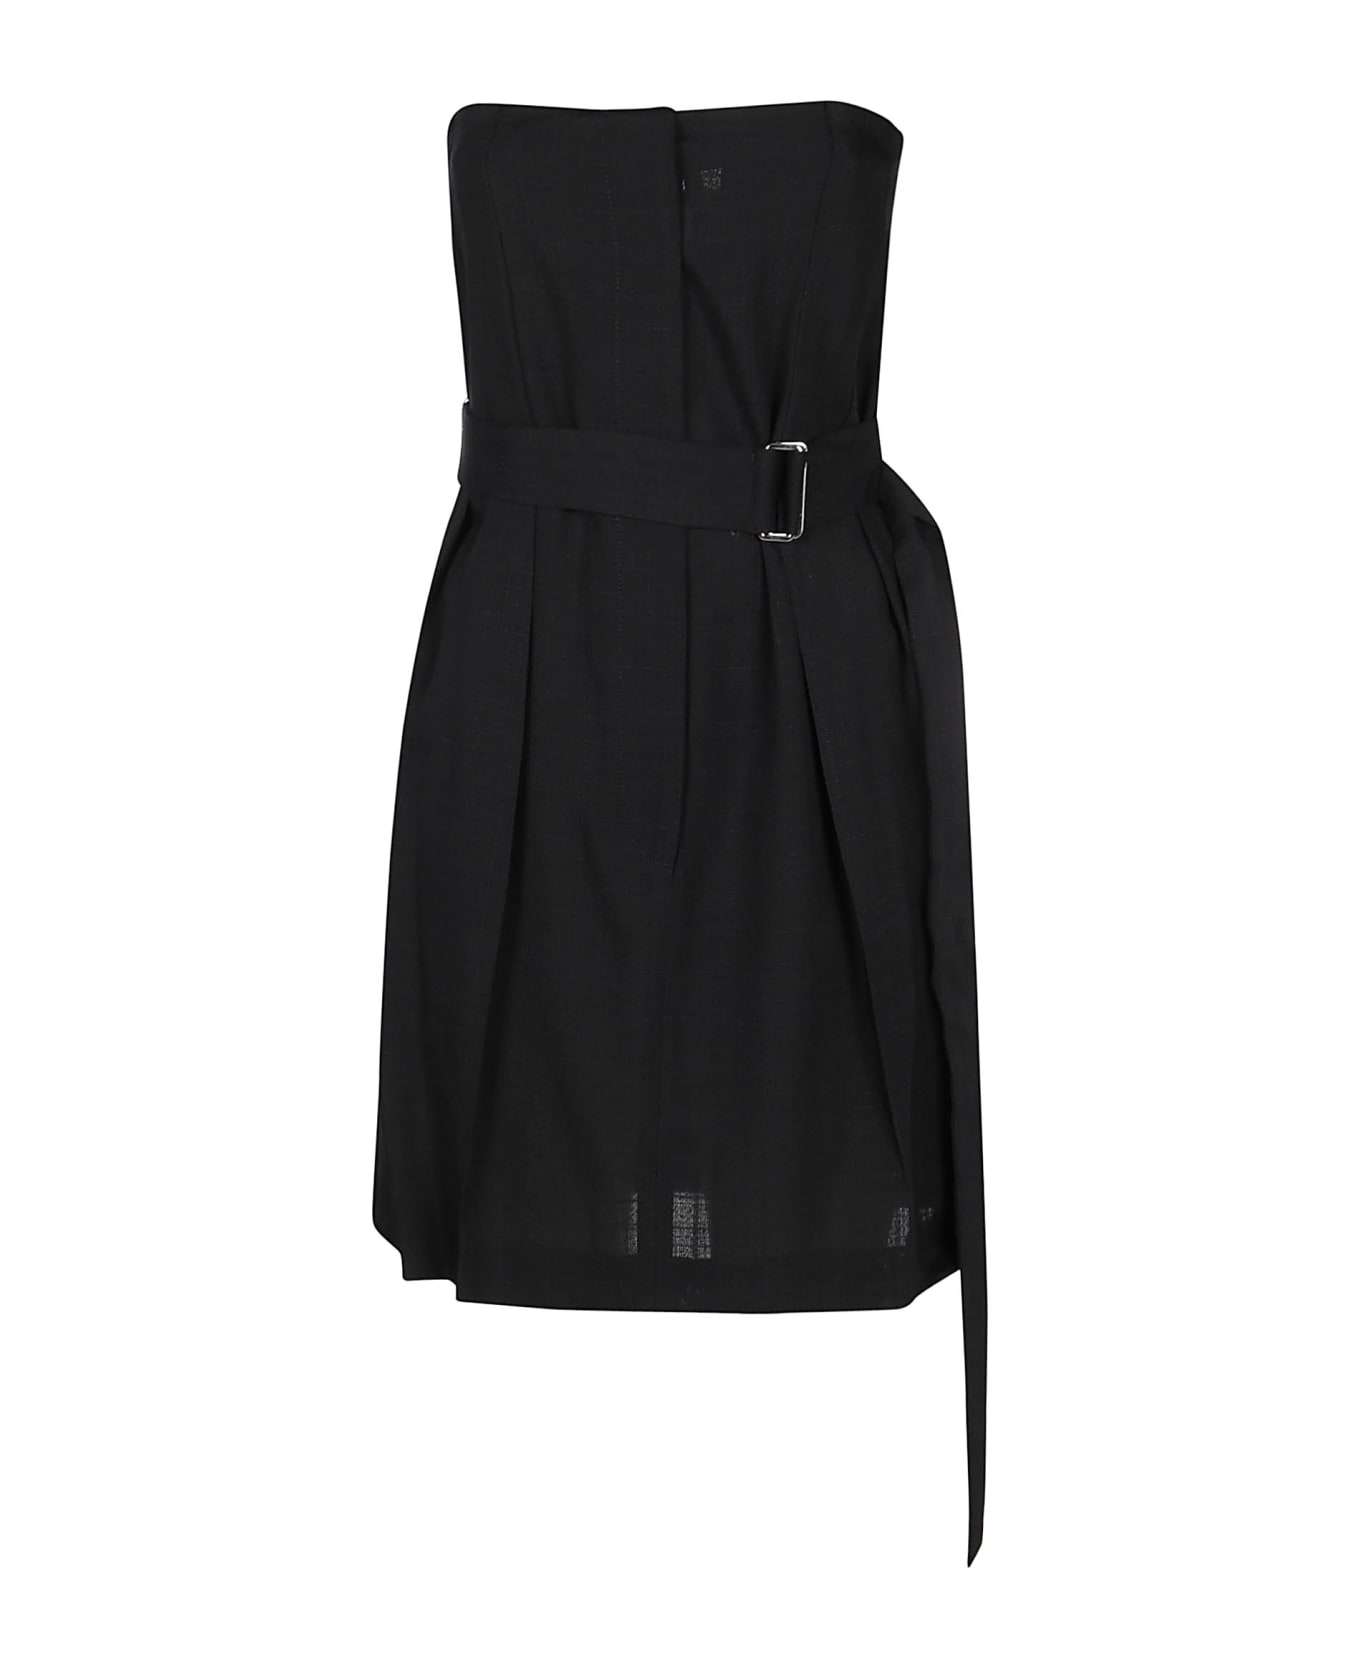 Victoria Beckham Strapless Mini Dress - Black